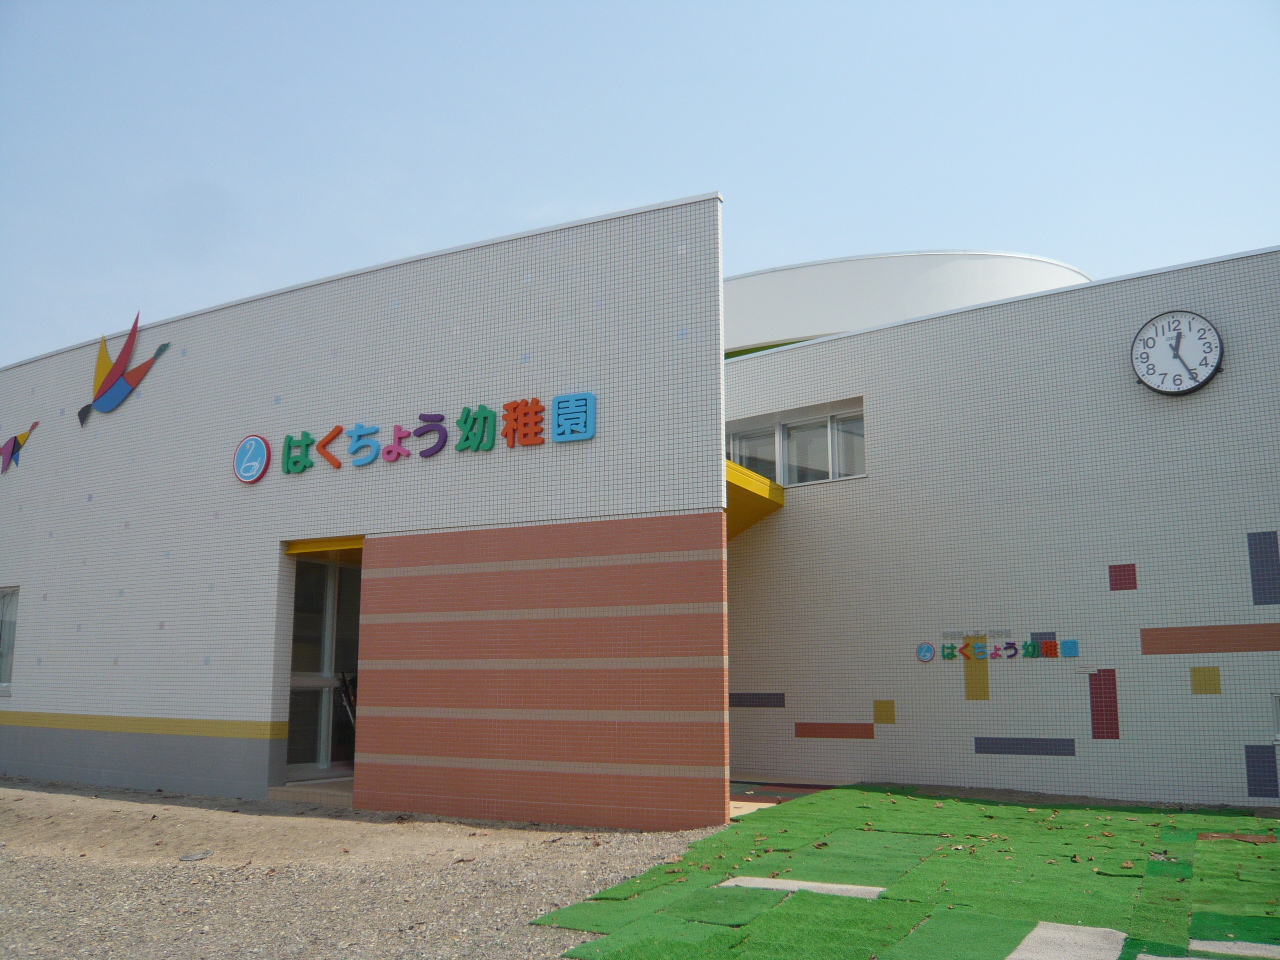 kindergarten ・ Nursery. Swan kindergarten (kindergarten ・ 869m to the nursery)